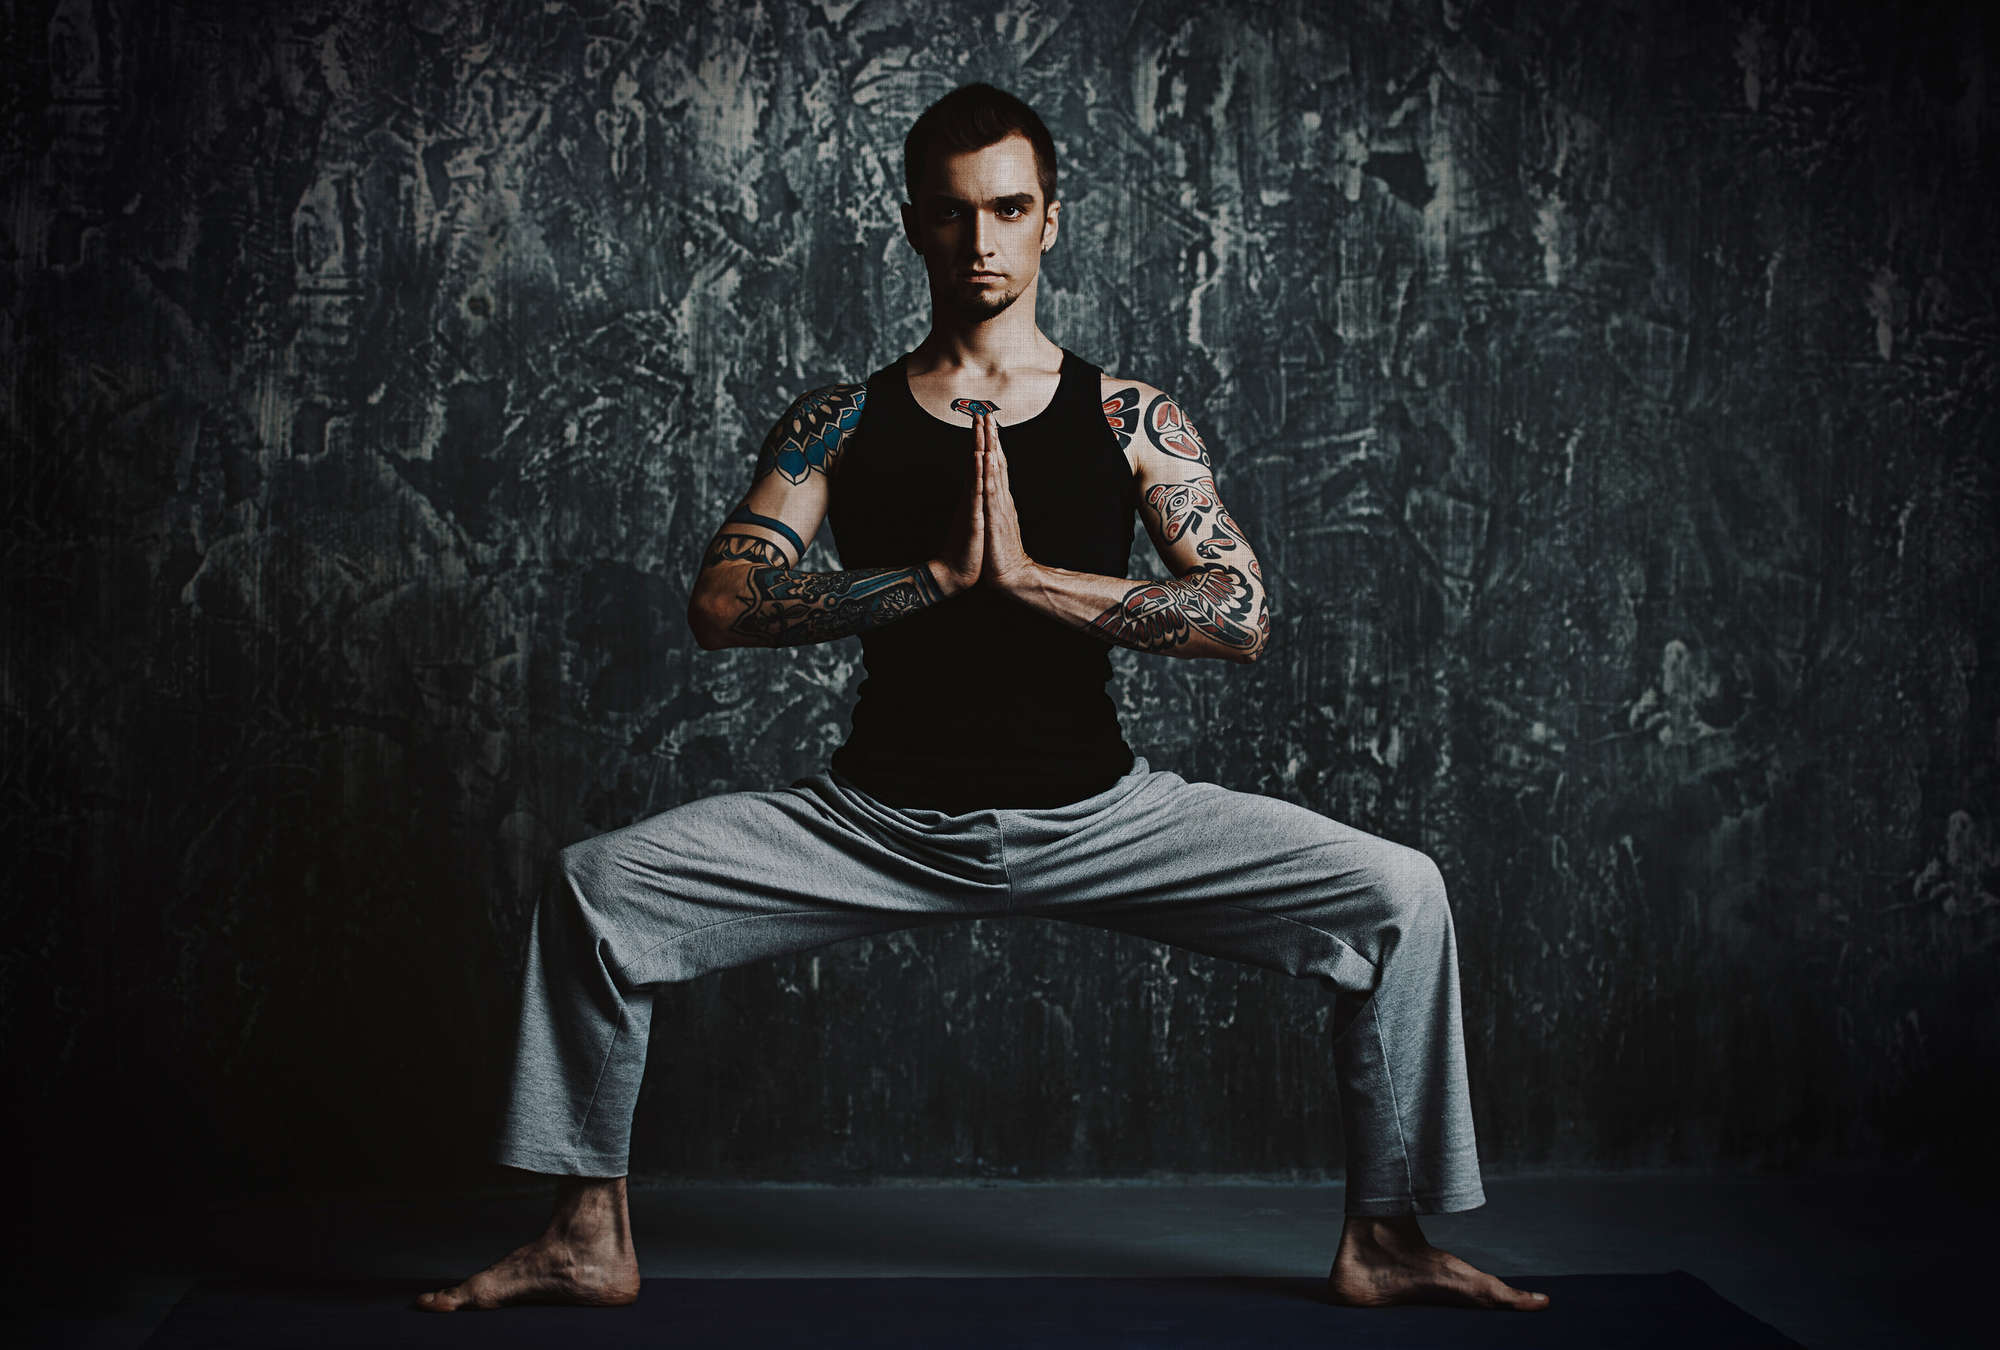             Chandra 1 - Man in yoga houding als fotobehang in natuurlijke linnenstructuur - Blauw, Zwart | Pearl glad non-woven
        